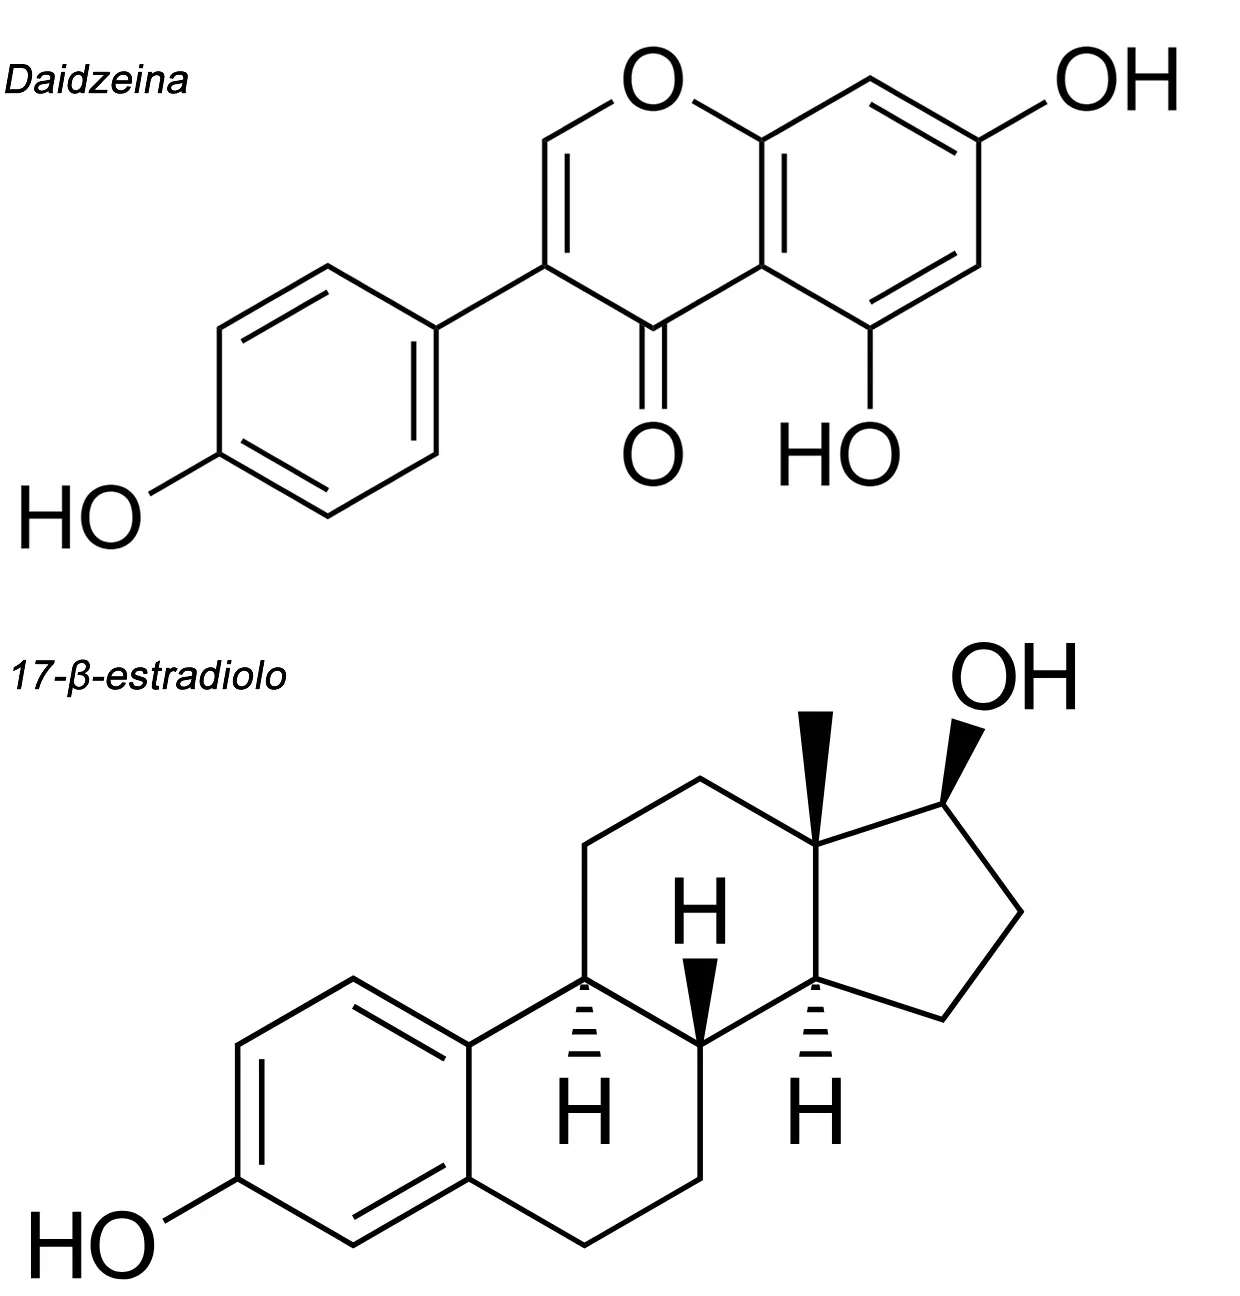 Daidzeina e 17-ß-estradiolo